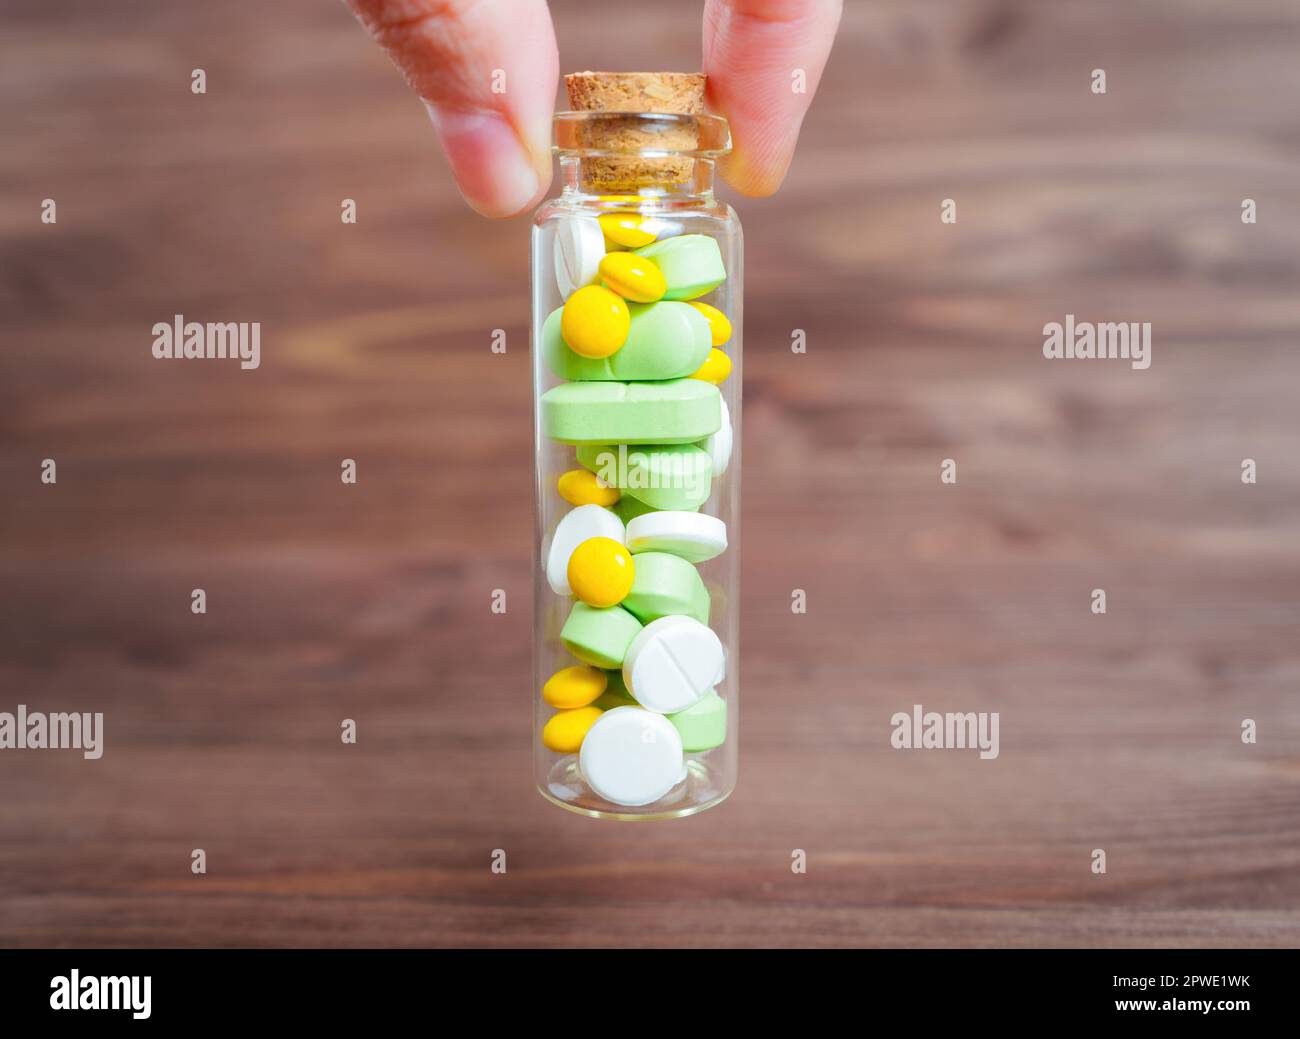 Halten Sie eine kleine Flasche aus Glas mit ovalen und runden grünen, gelben und weißen Pillen vor einem dunklen Holztisch. Medikamentenmann Stockfoto